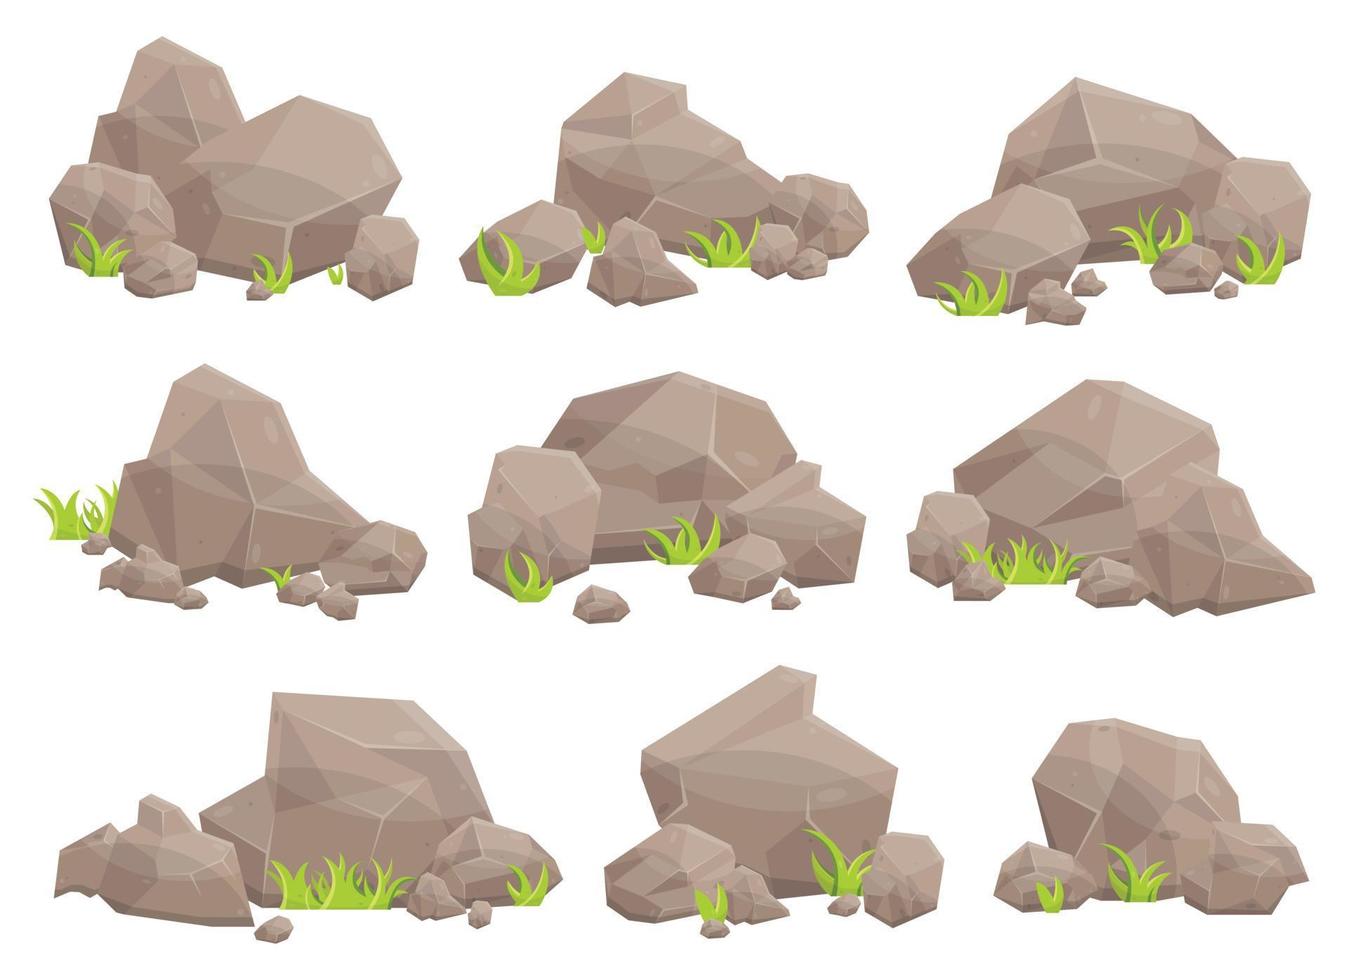 conjunto de piedras de roca y cantos rodados en estilo de dibujos animados vector